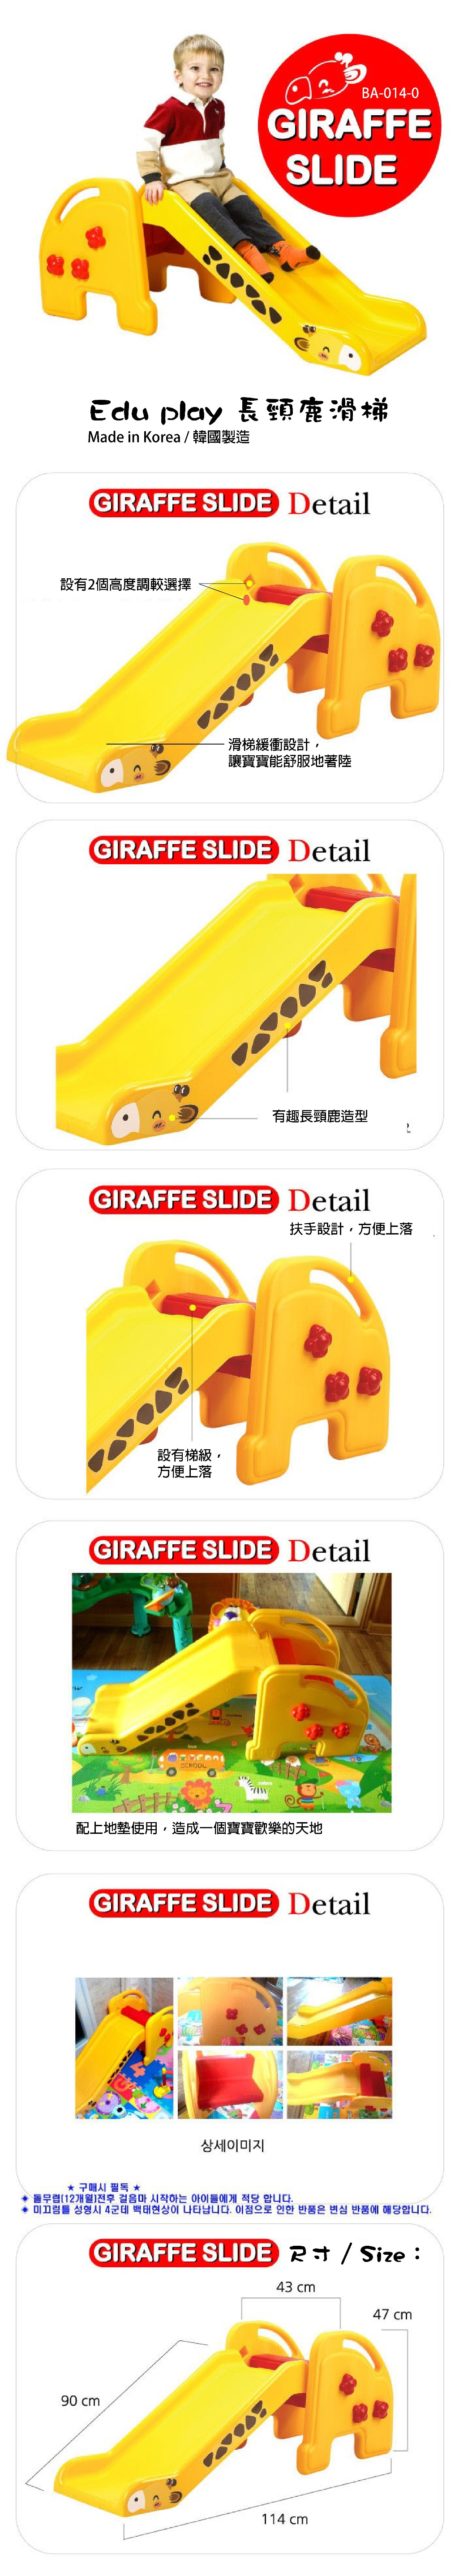 giraffe-slide-web-detail-scaled.jpg